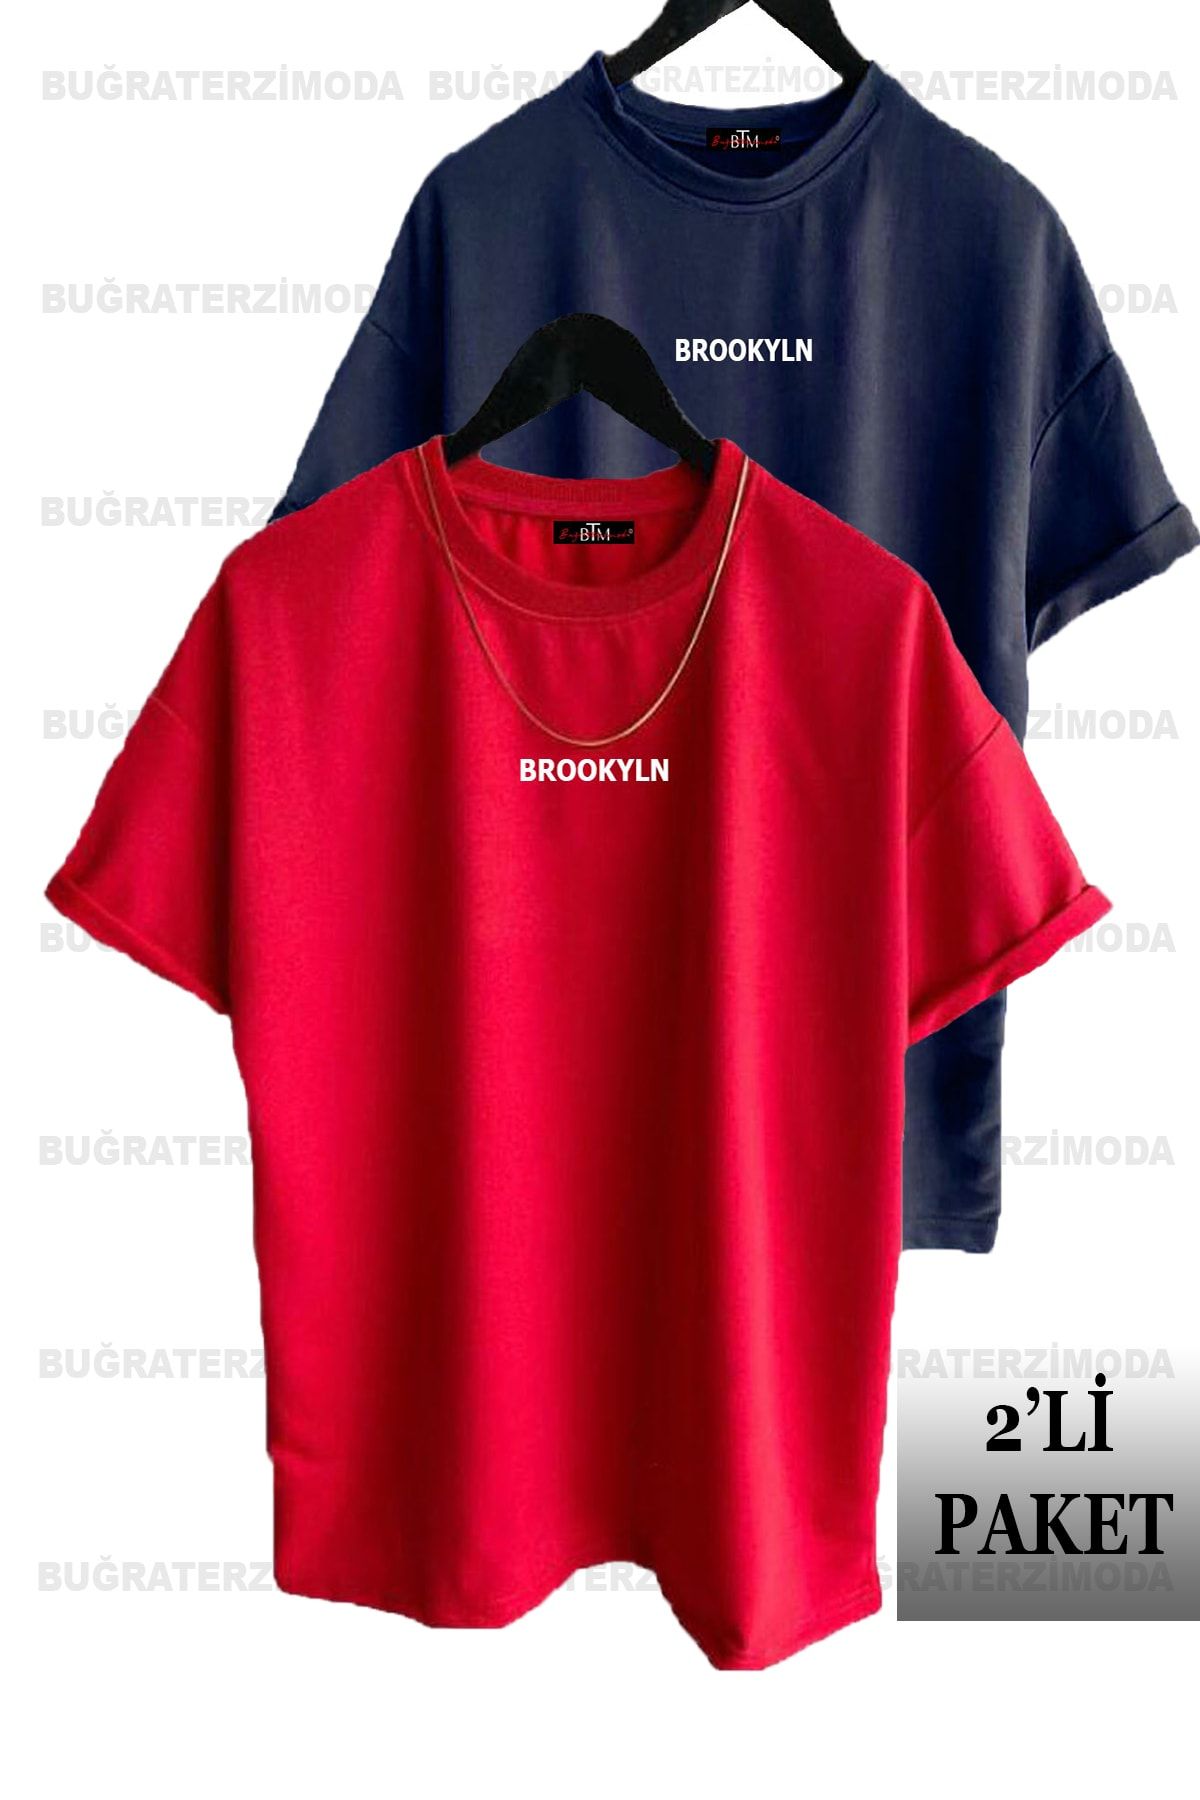 Buğraterzimoda Brooklyn Baskılı Unisex Lacivert-Kırmızı 2'li Oversize T-Shirt Paketi